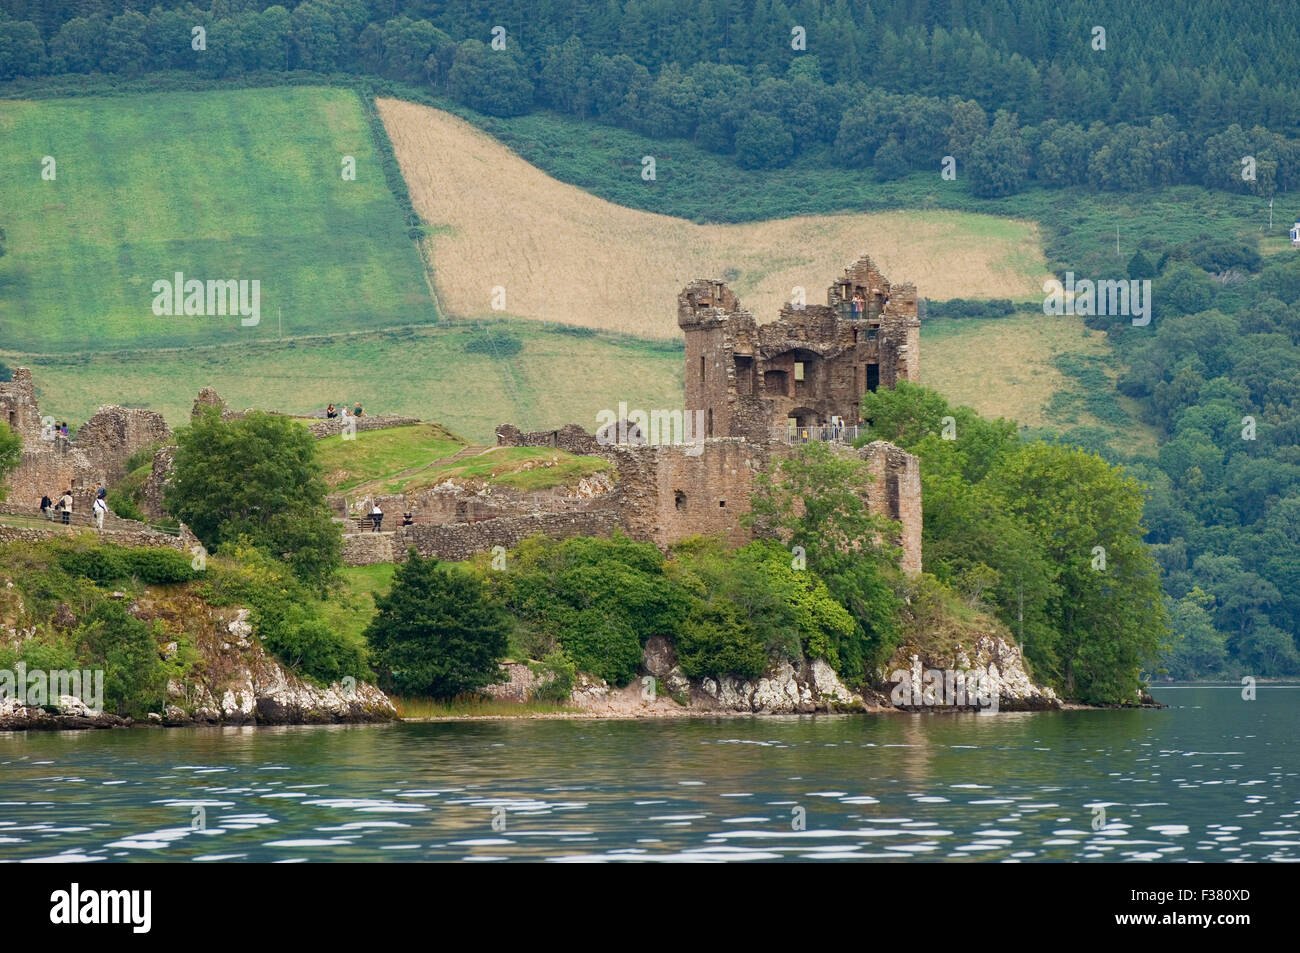 El castillo de Urquhart y Loch Ness, cerca de Drumnadrochit, región de tierras altas, Escocia. Foto de stock